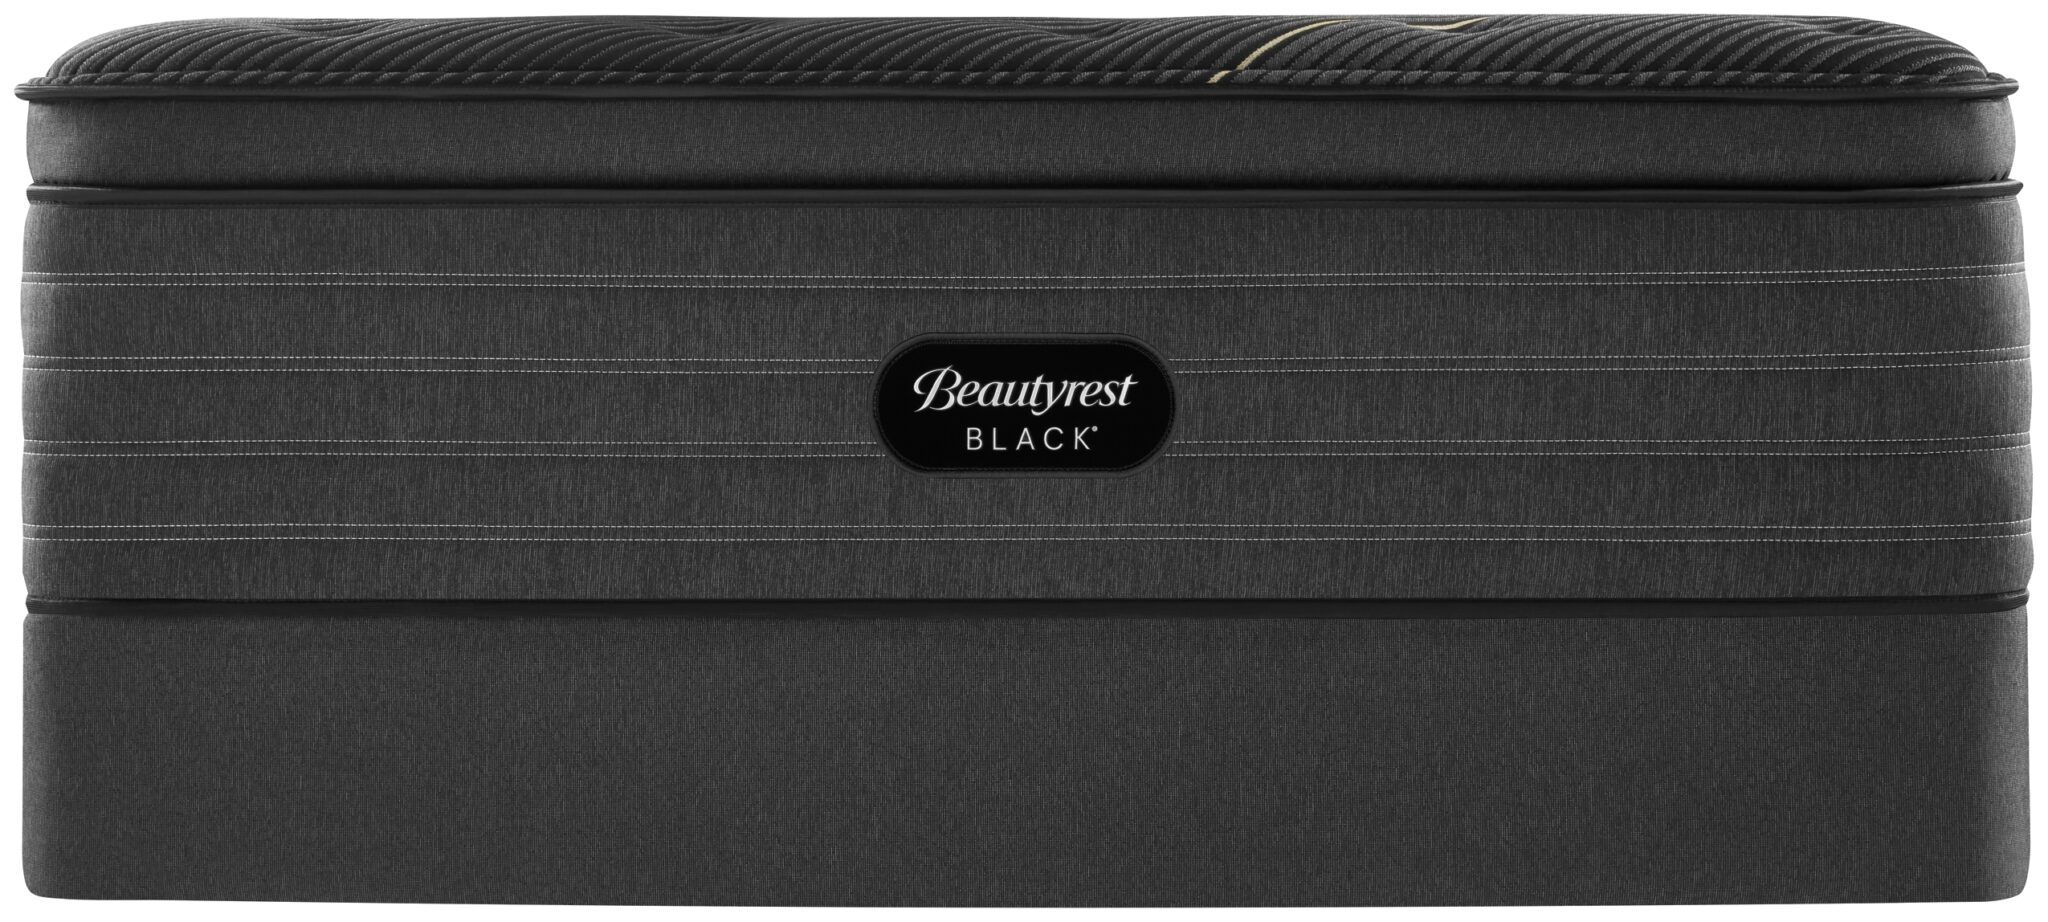 simmons beautyrest black k-class firm pillowtop mattress